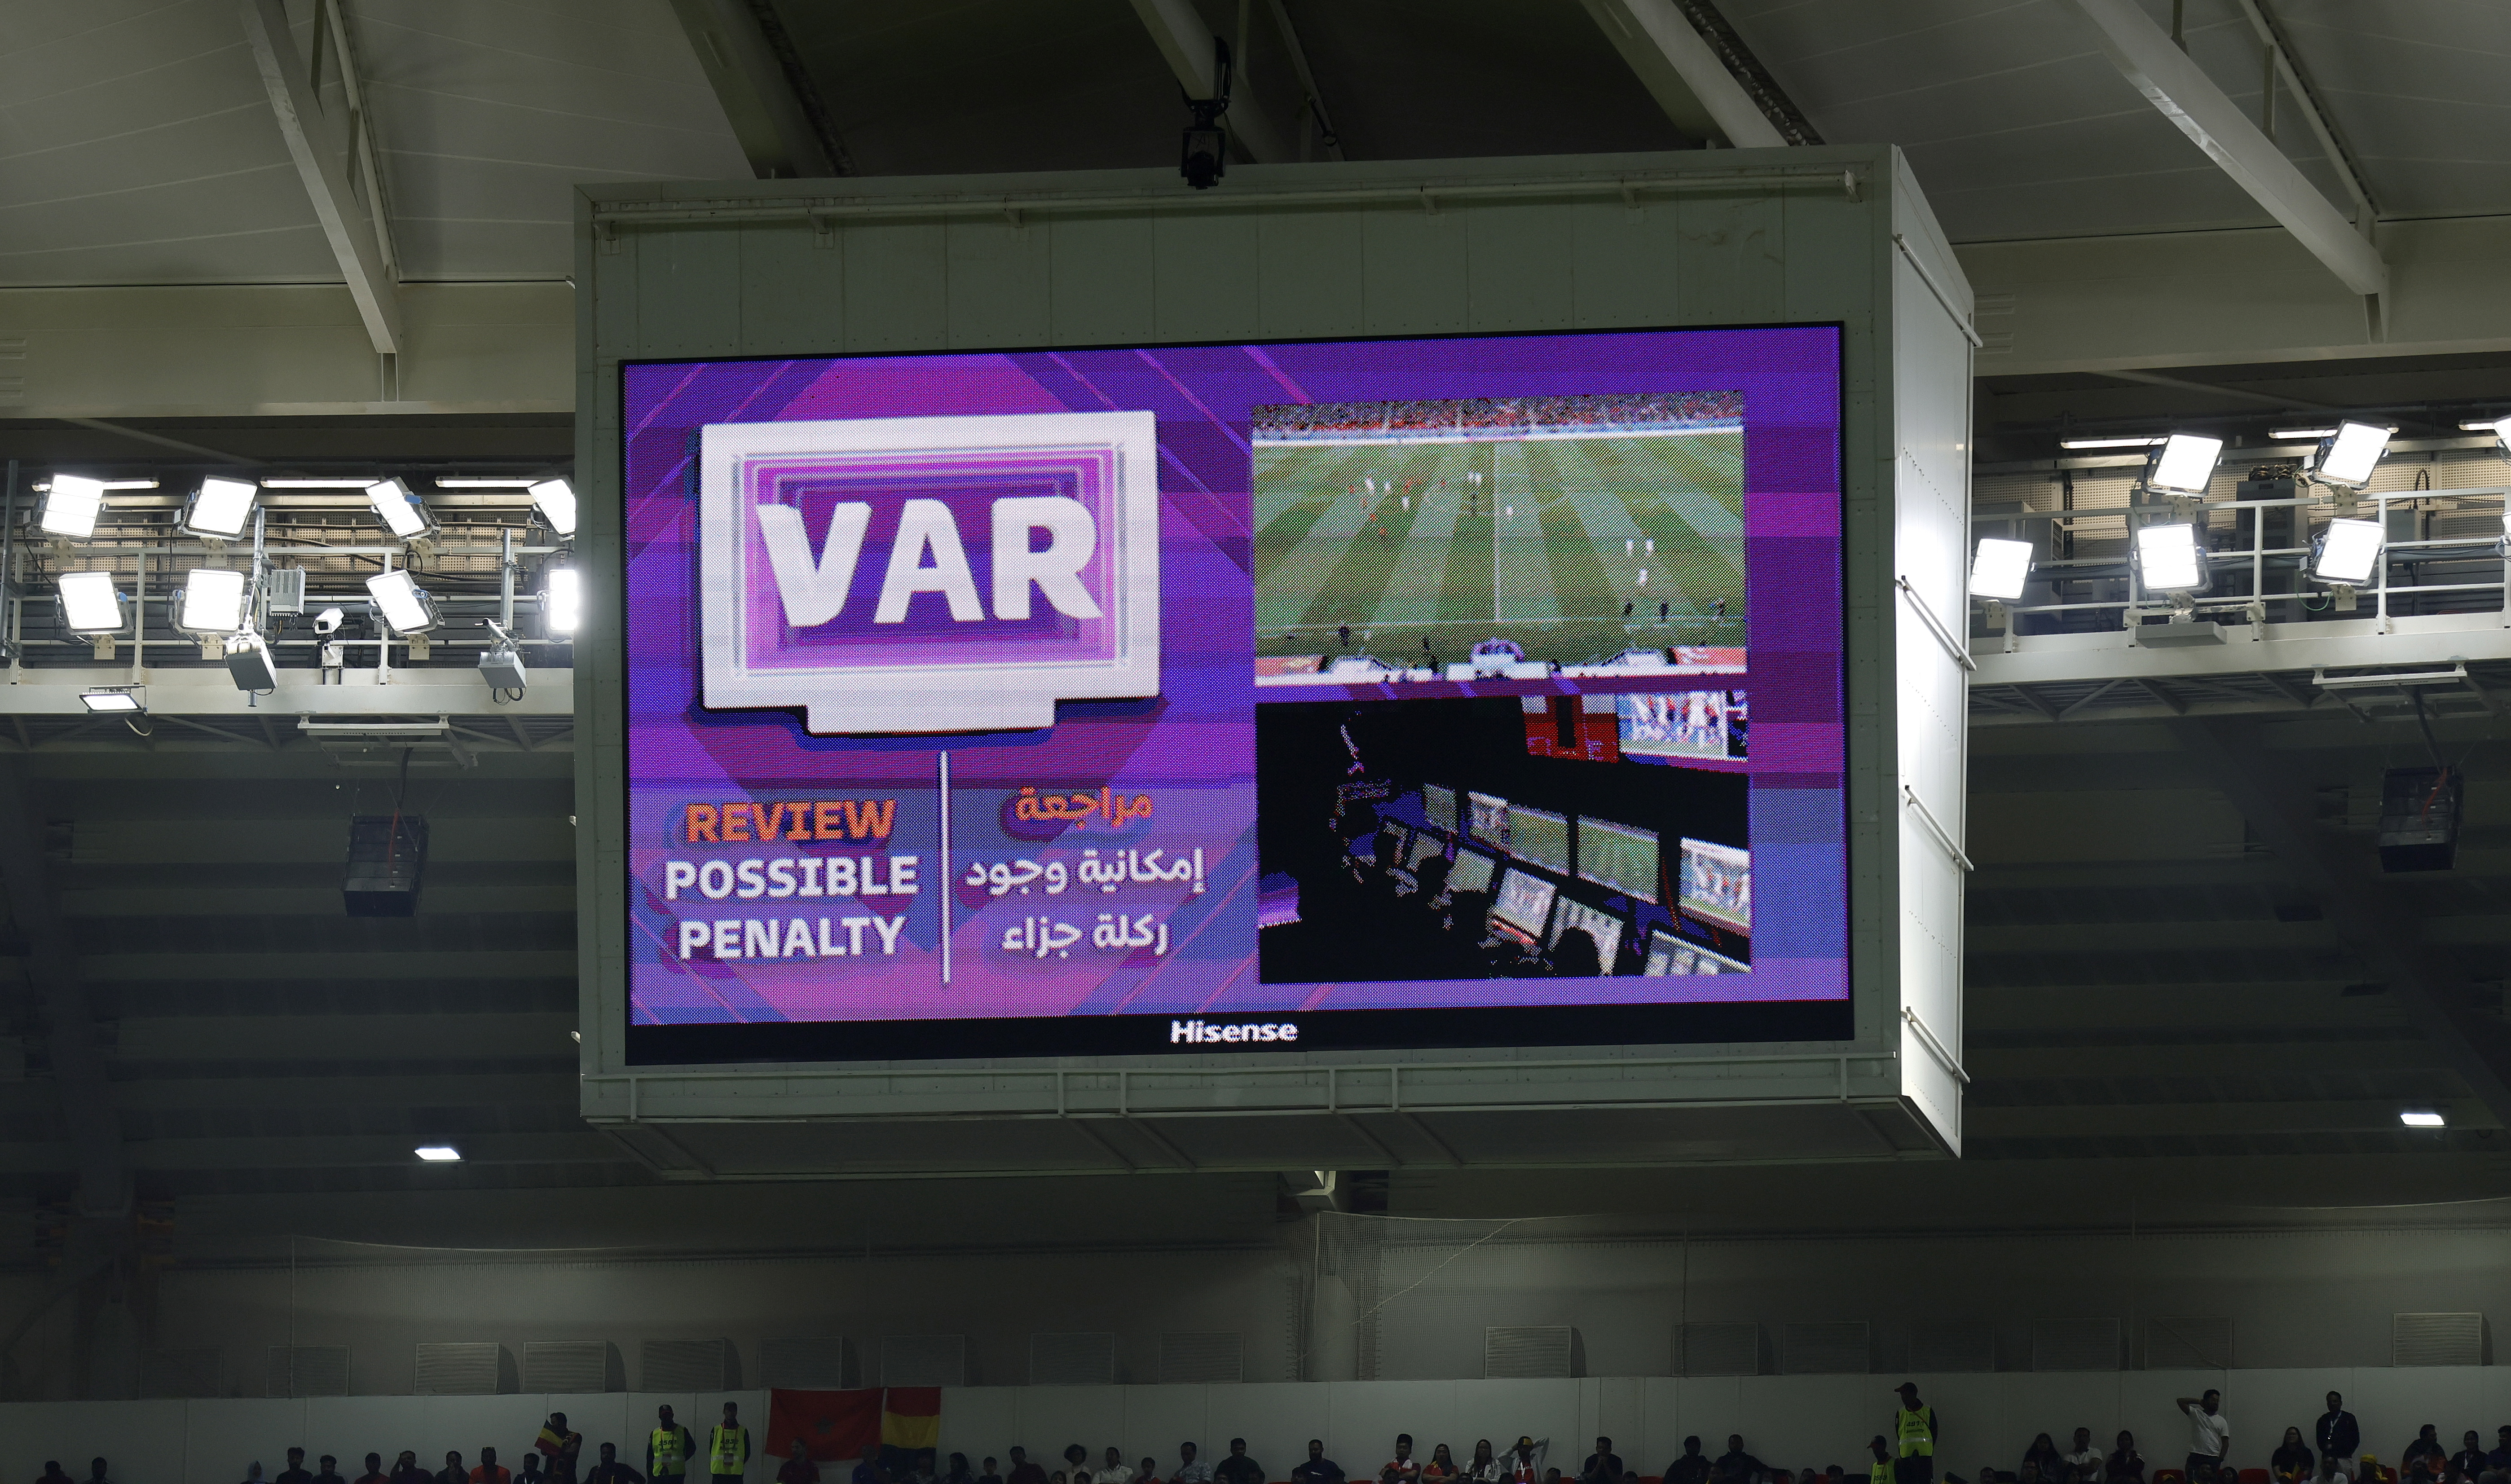 شاشة الملعب تعلن عودة الحكم لتقنية الفيديو المساعد لرؤية إمكانية وجود ضربة جزاء محتملة خلال مباراة المجموعة السادسة لكأس العالم لكرة القدم 2022 بين بلجيكا وكندا. 23 نوفمبر/نسرين الثاني 2022.